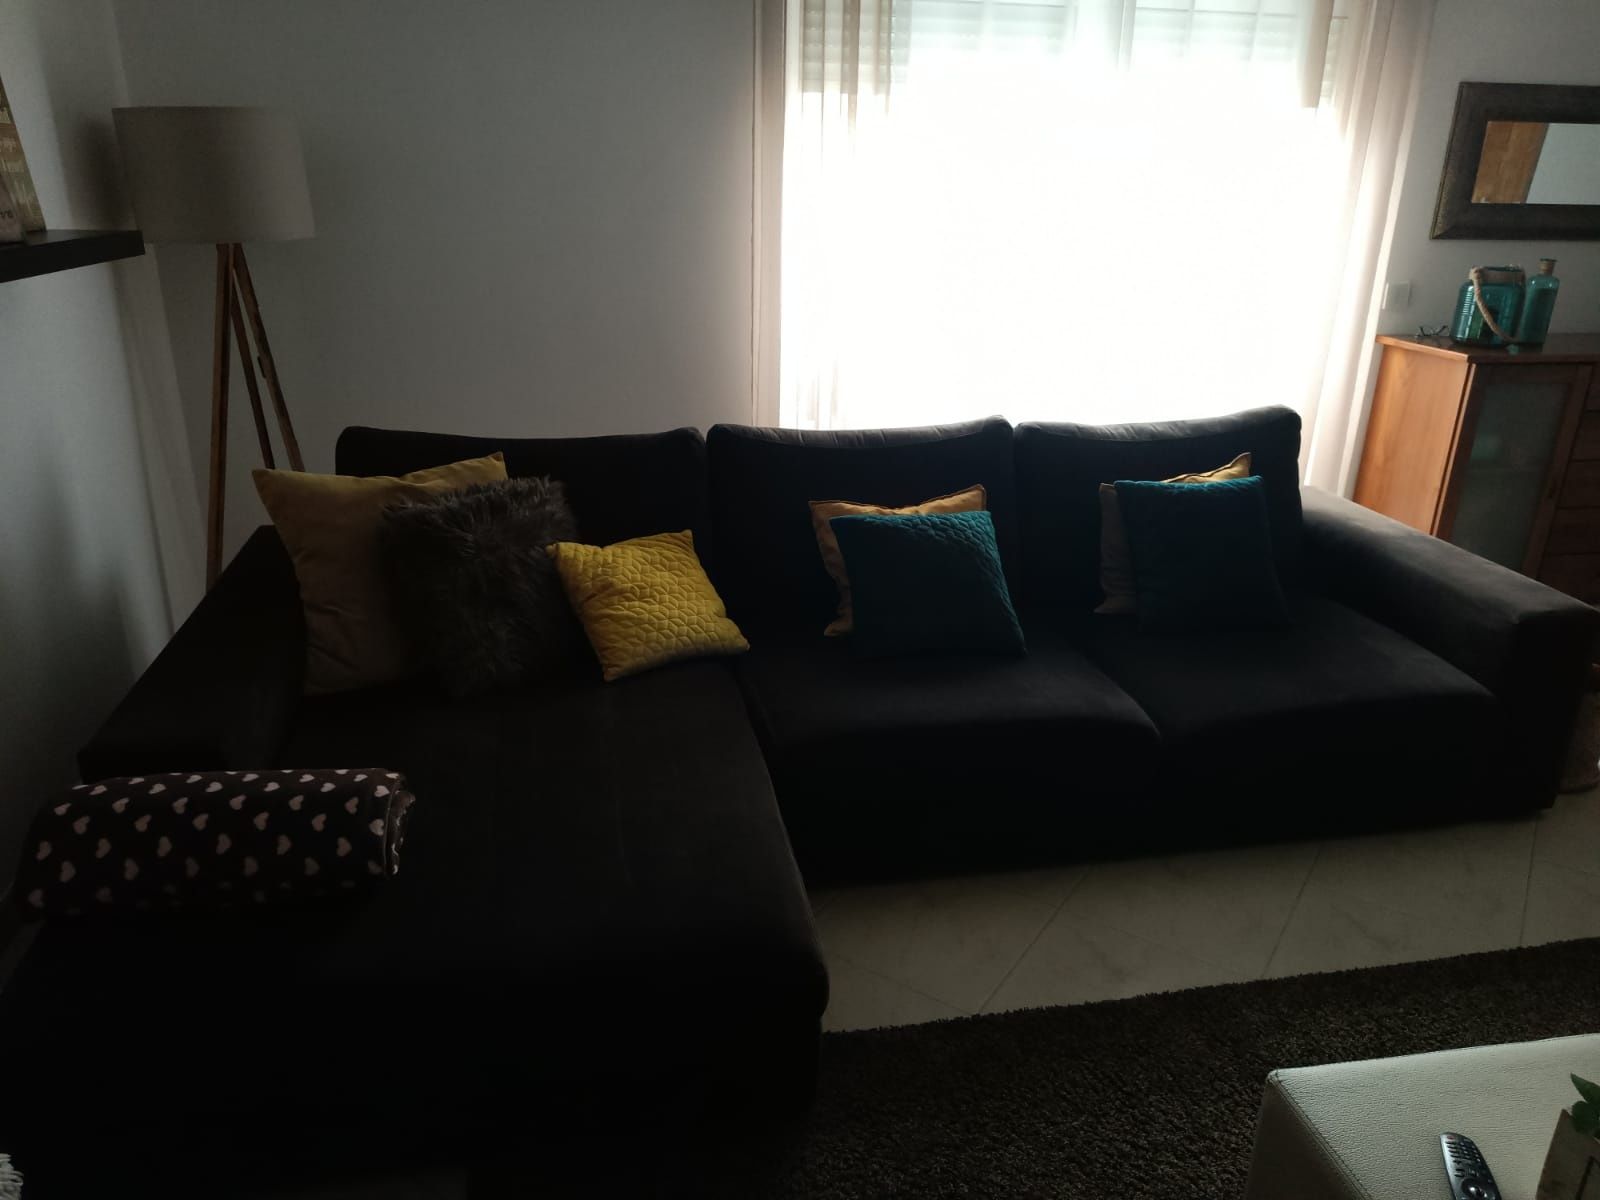 Vendo sofá com chaise longue